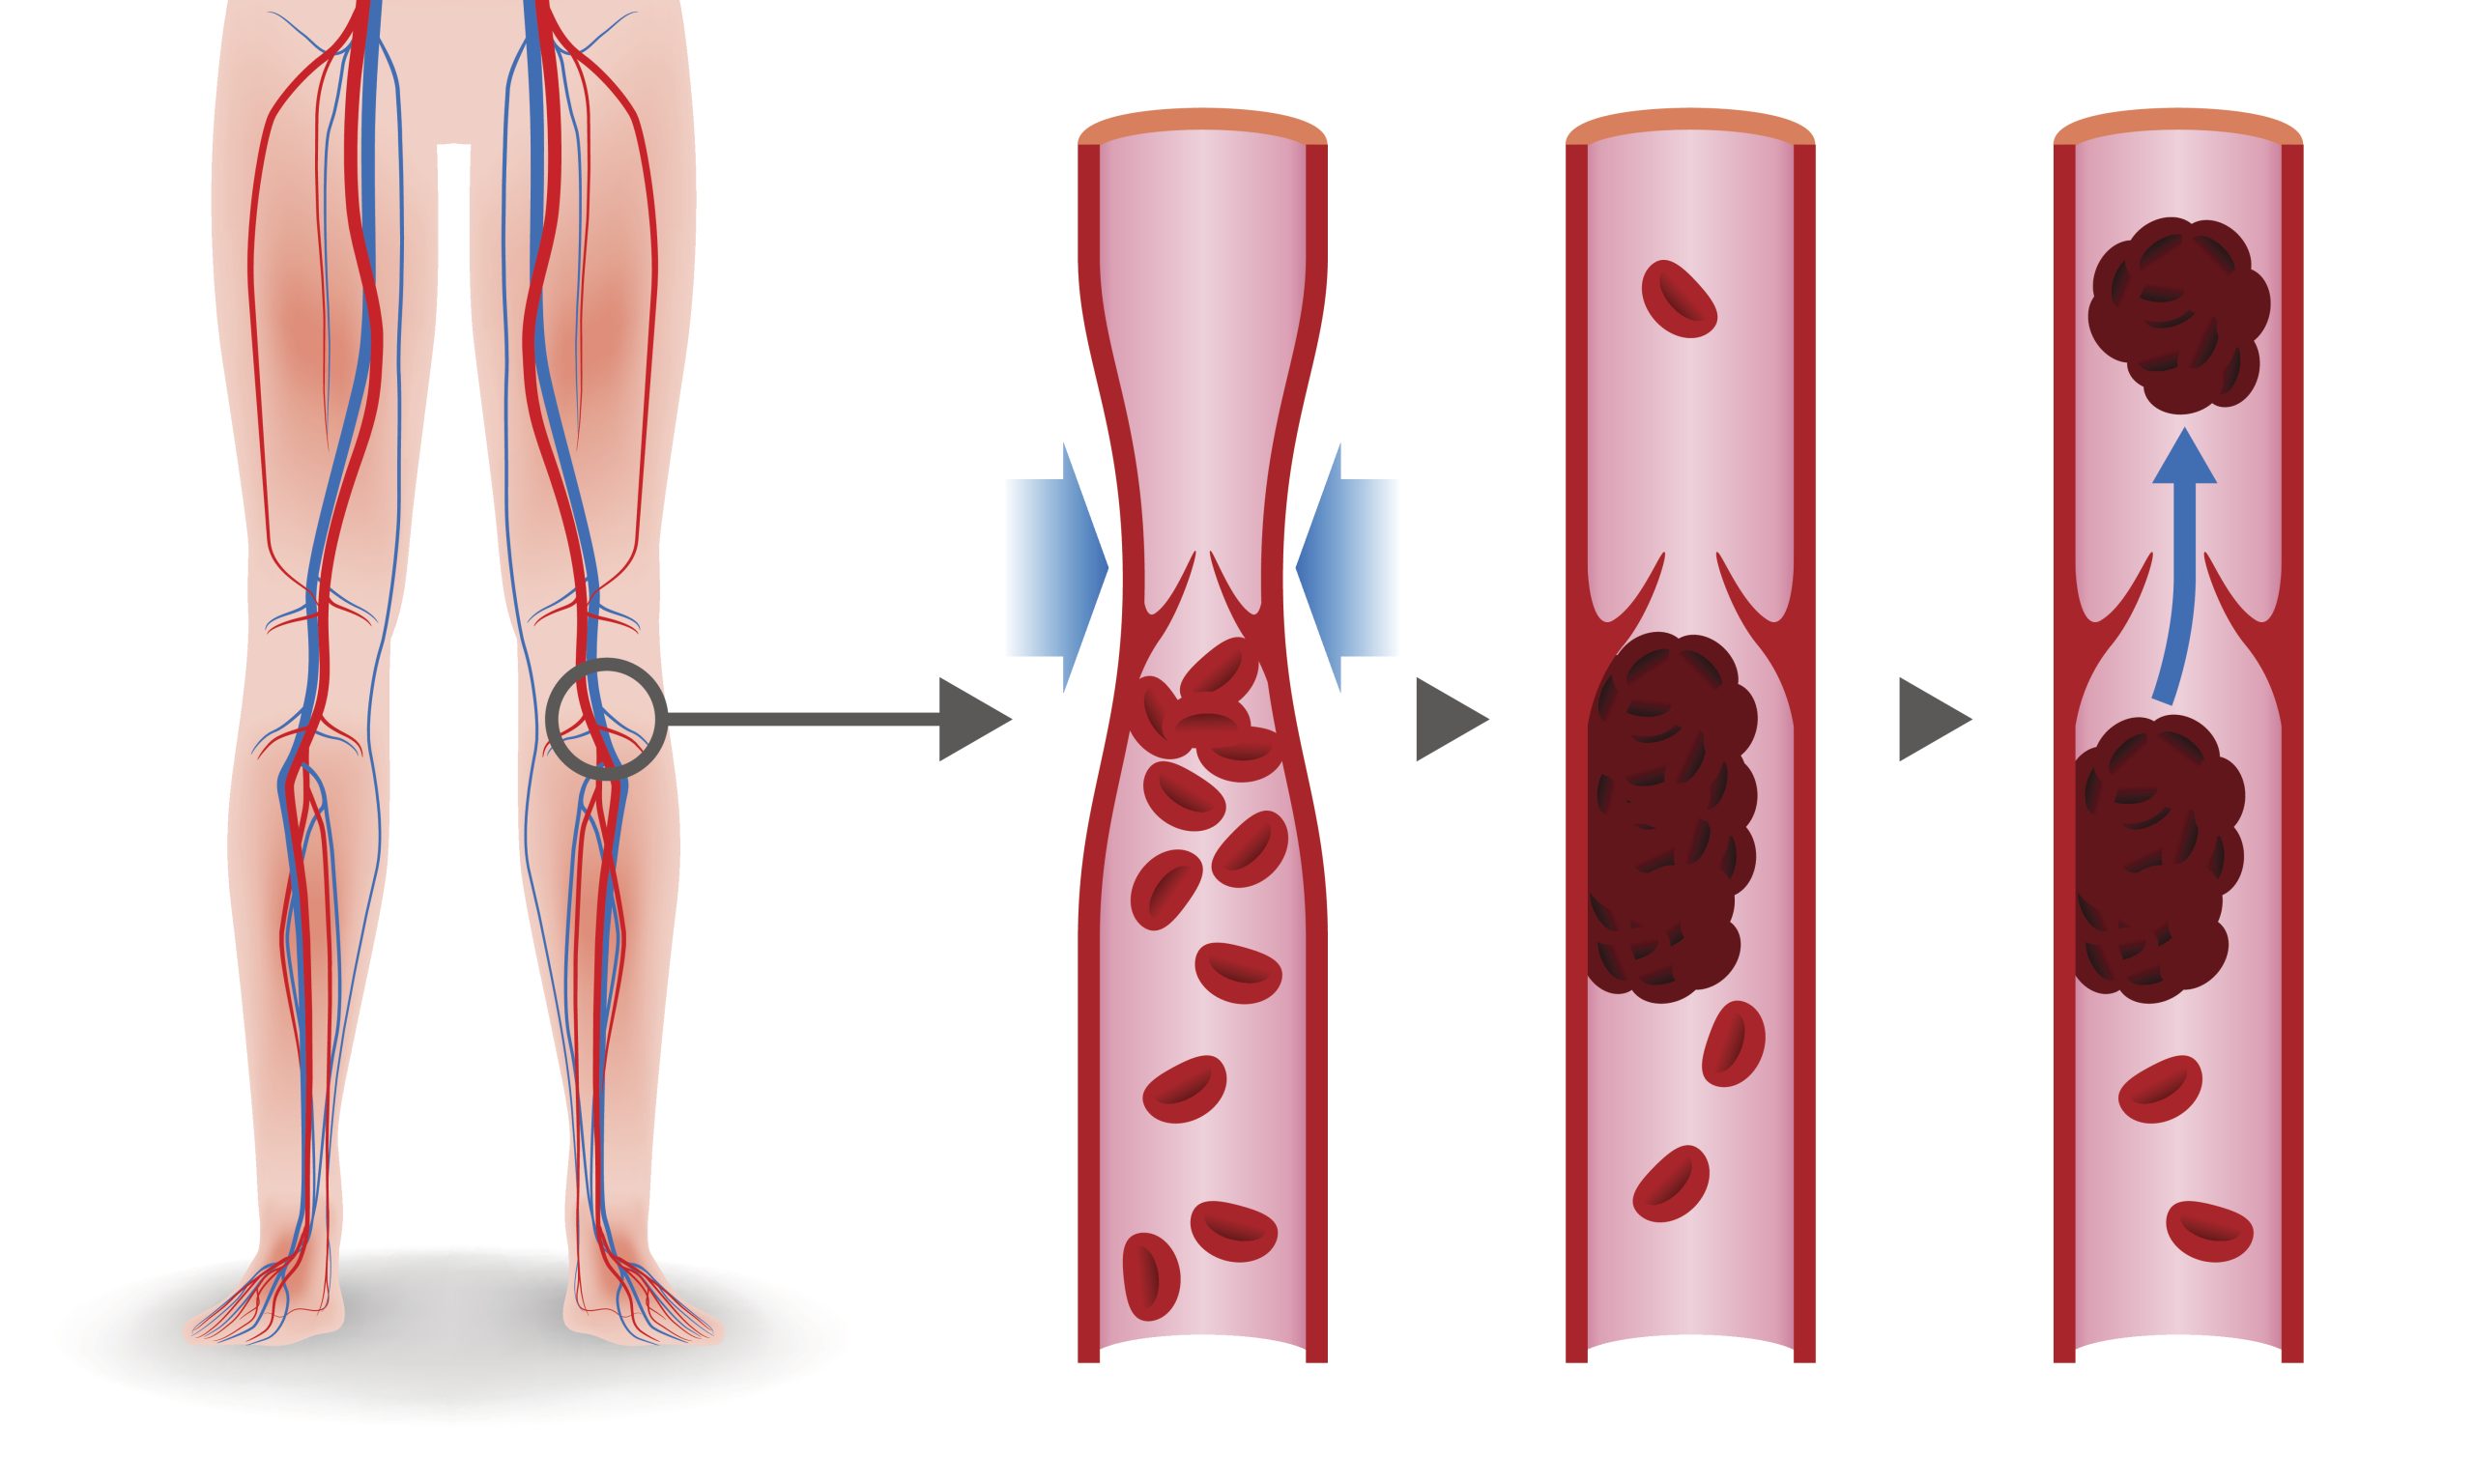 Representación gráfica de una trombosis en la pierna.